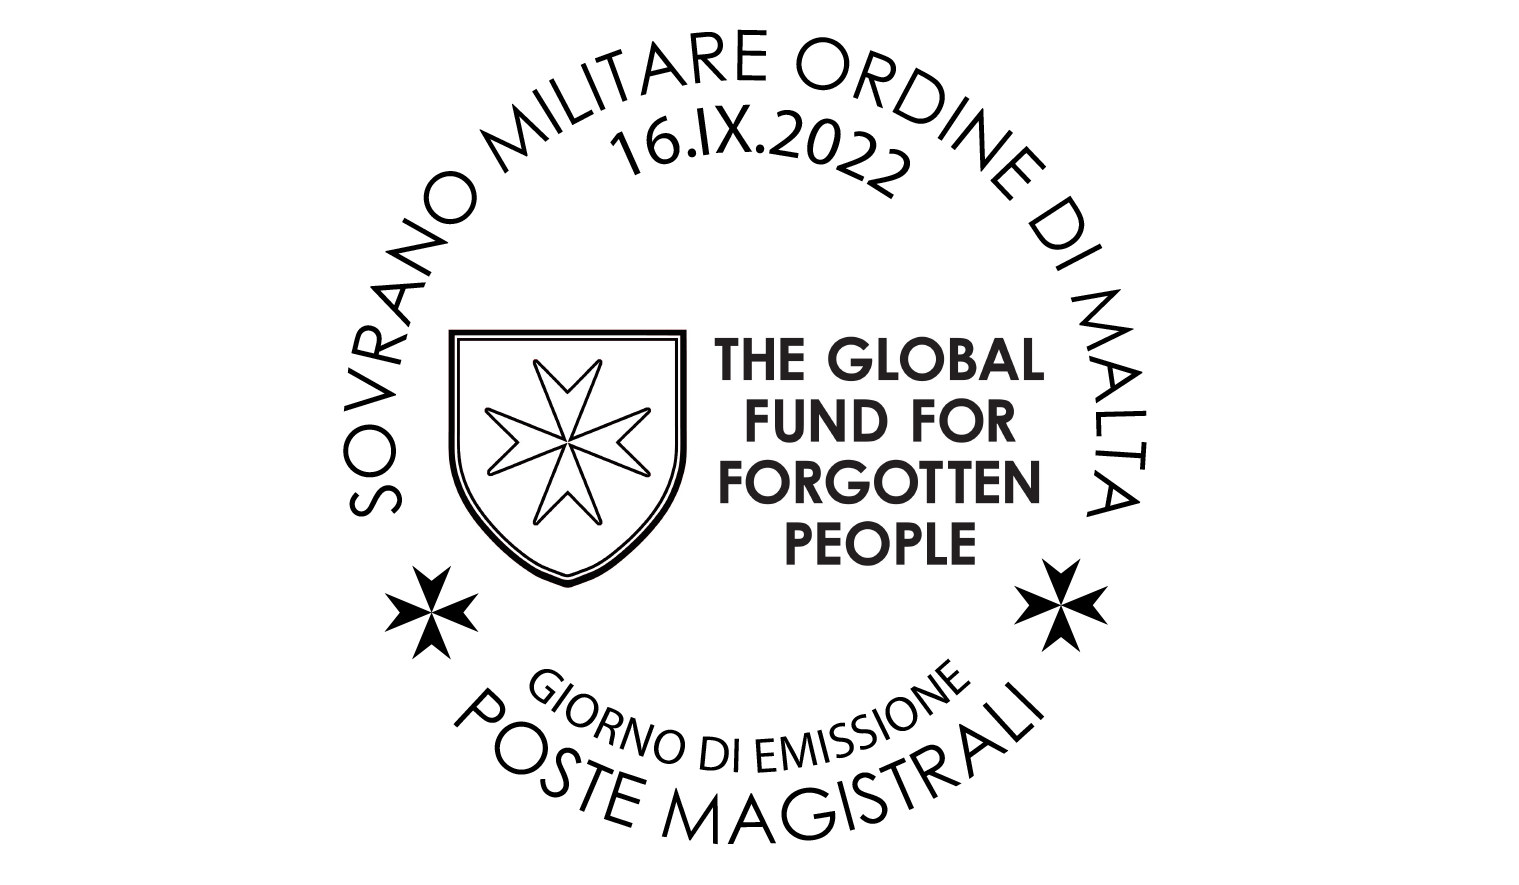 Annullo Giorno di Emissione – Fondo per le Persone Dimenticate (The Global Fund for Forgotten People), nel decimo anniversario dell’istituzione